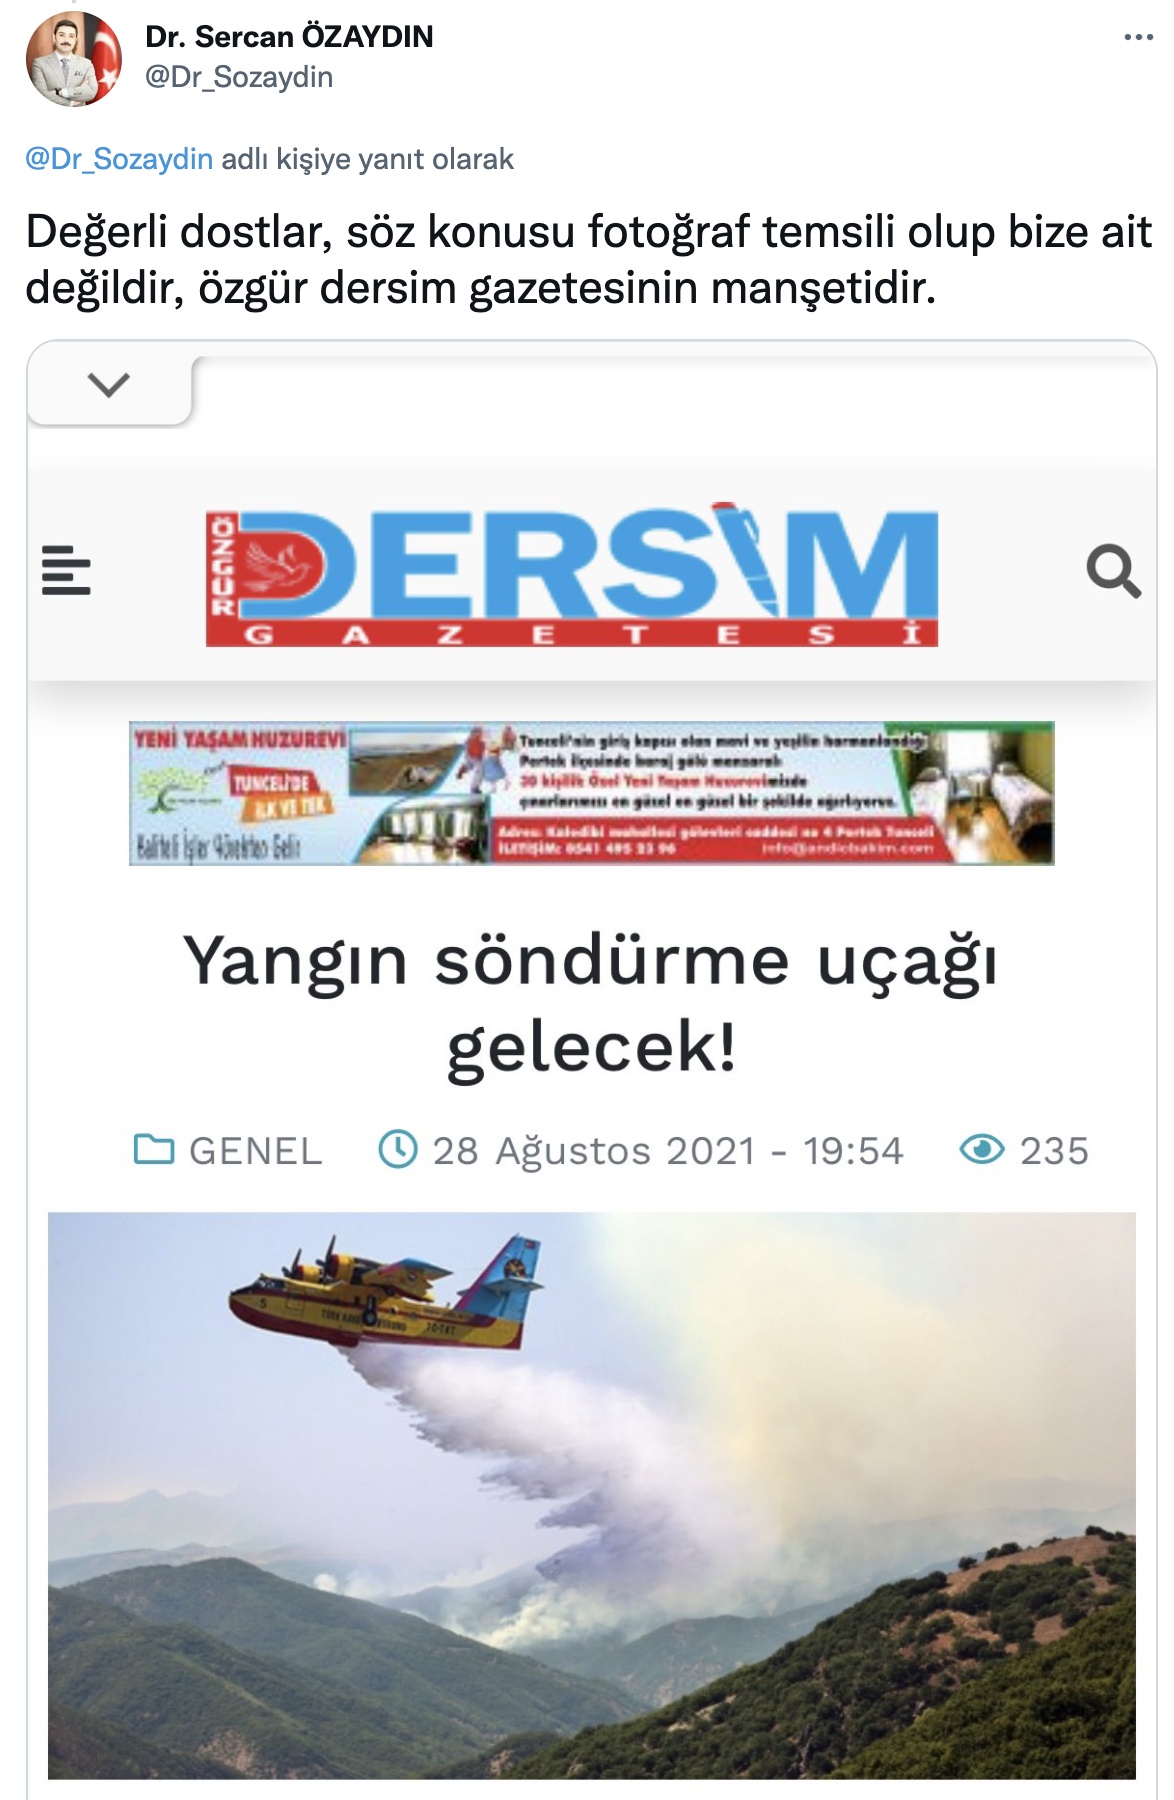 AKP'li vilayet lideri, Tunceli'deki yangın için Photoshop'lu görsel paylaştı: Devletimiz tüm imkanlarıyla müdahale etmektedir